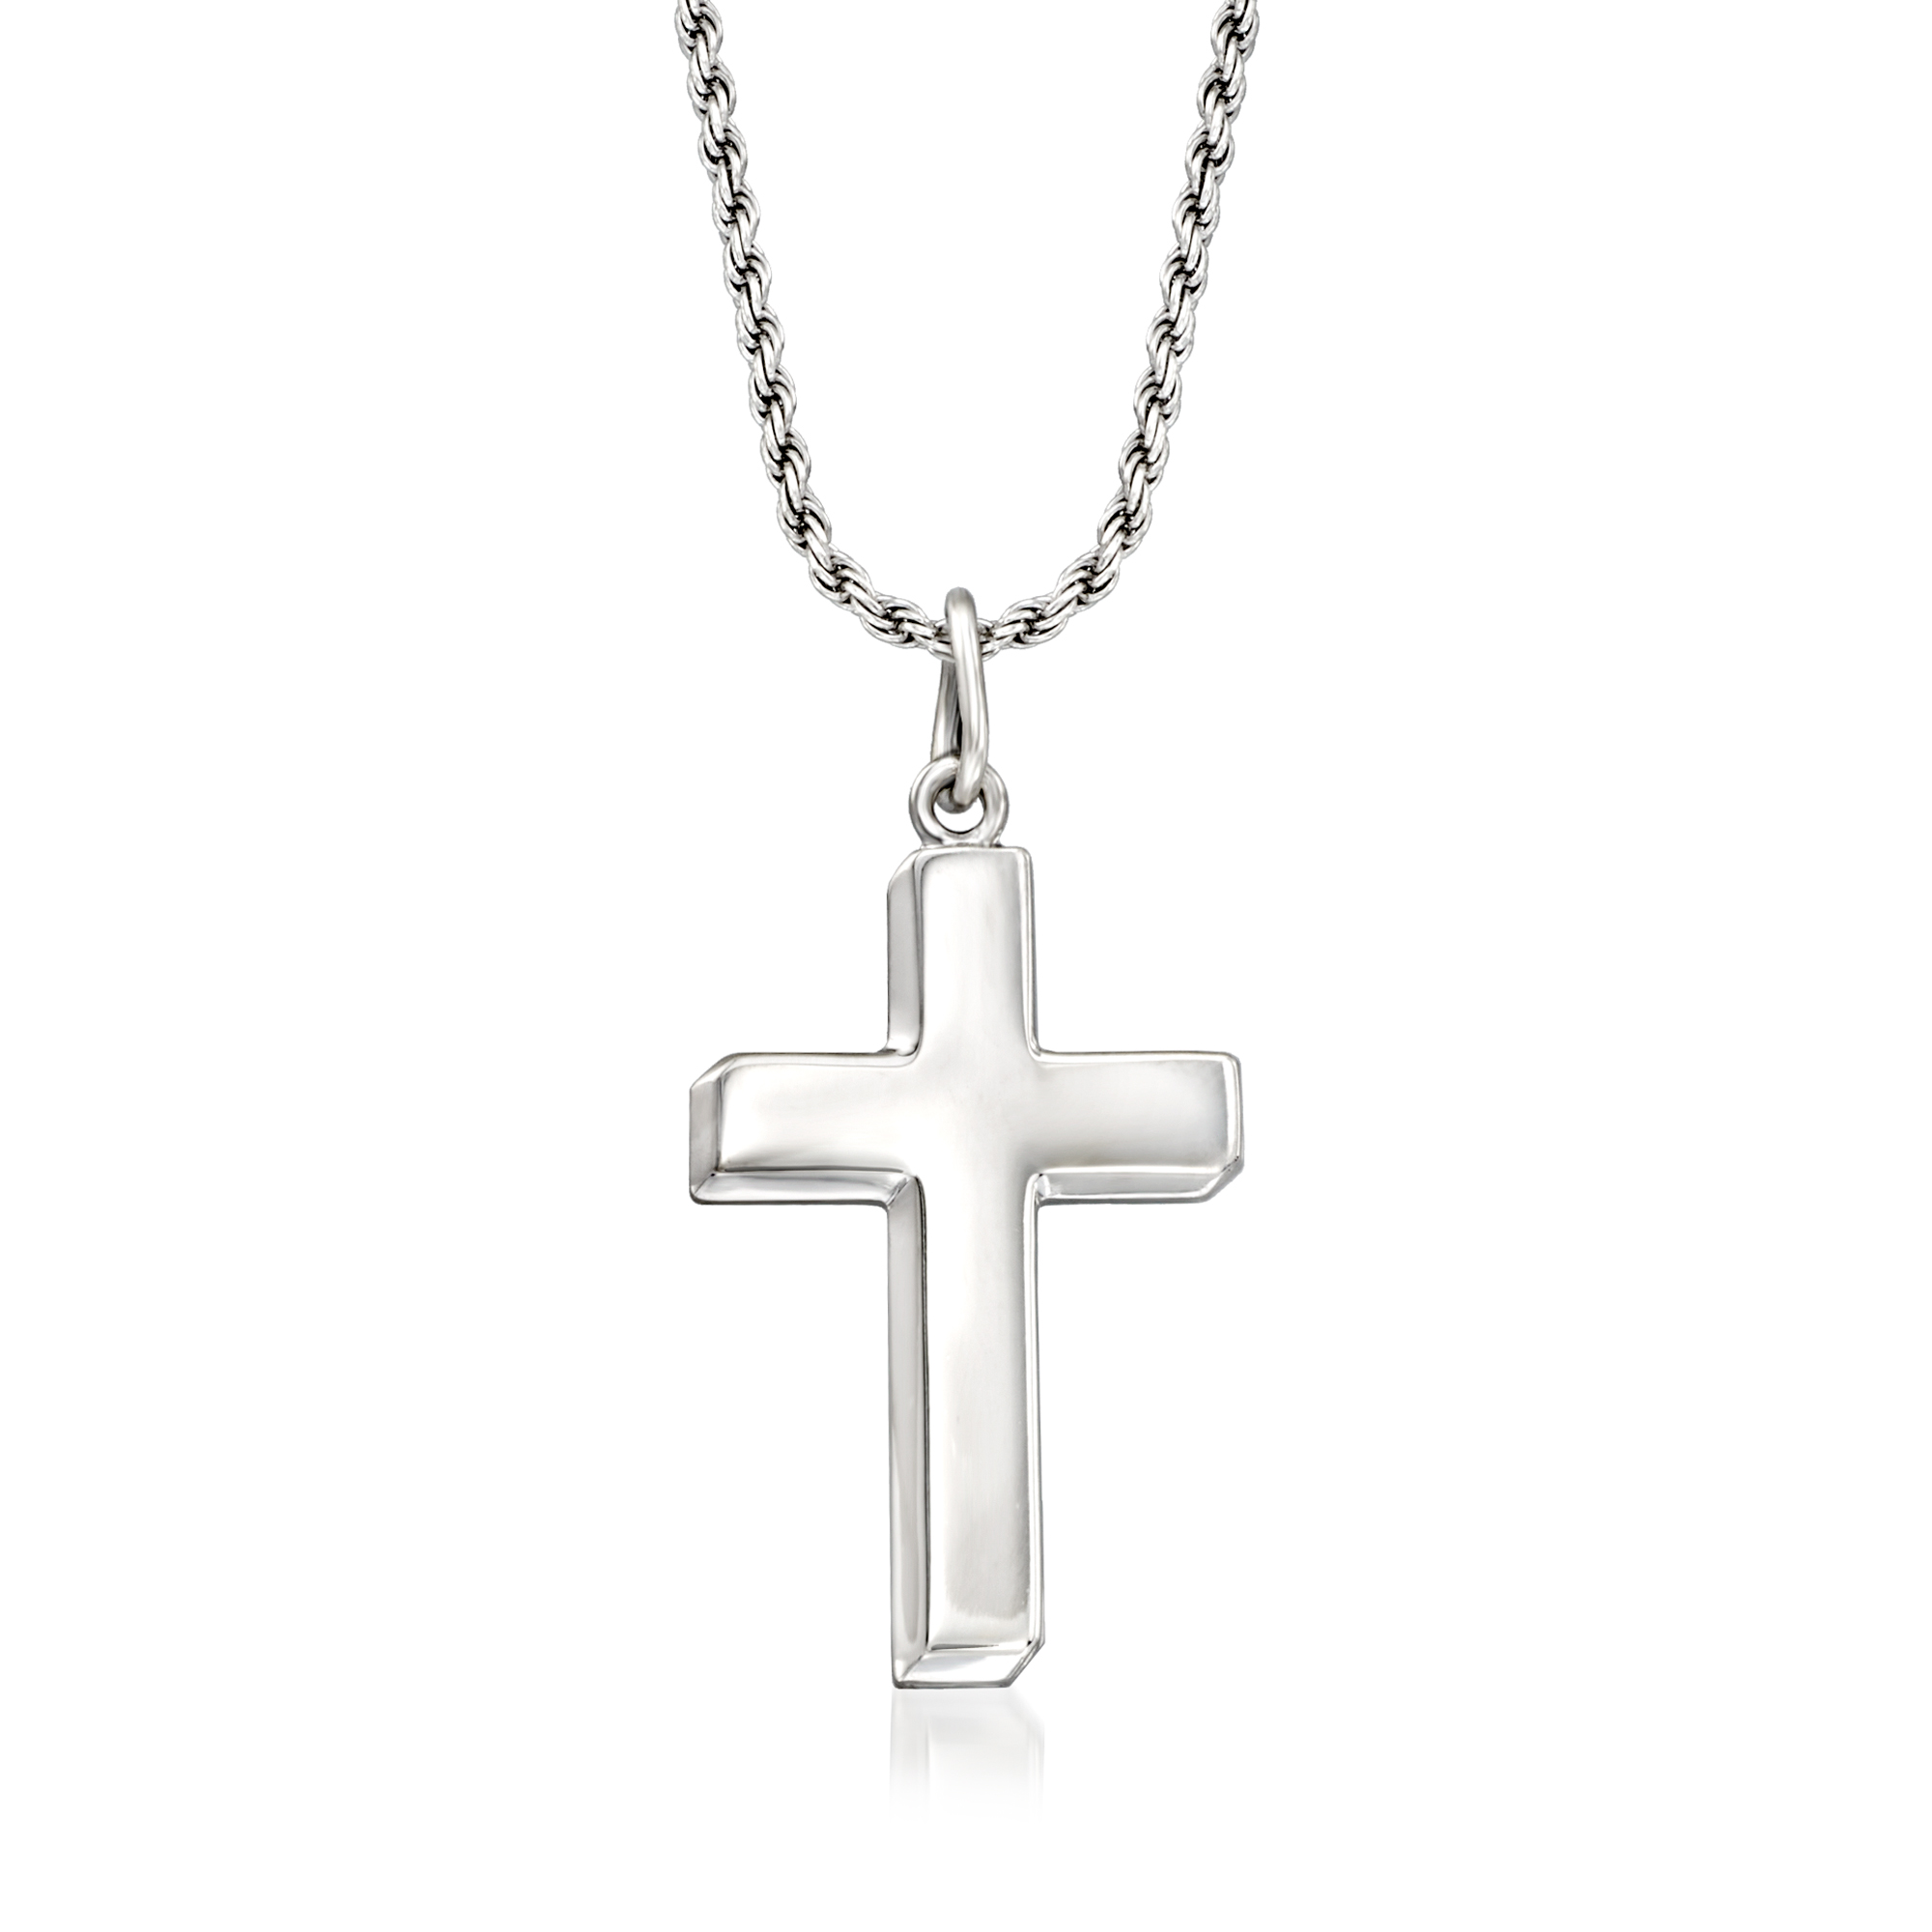 Men's Sterling Silver Cross Pendant Necklace. 22" | Ross-Simons